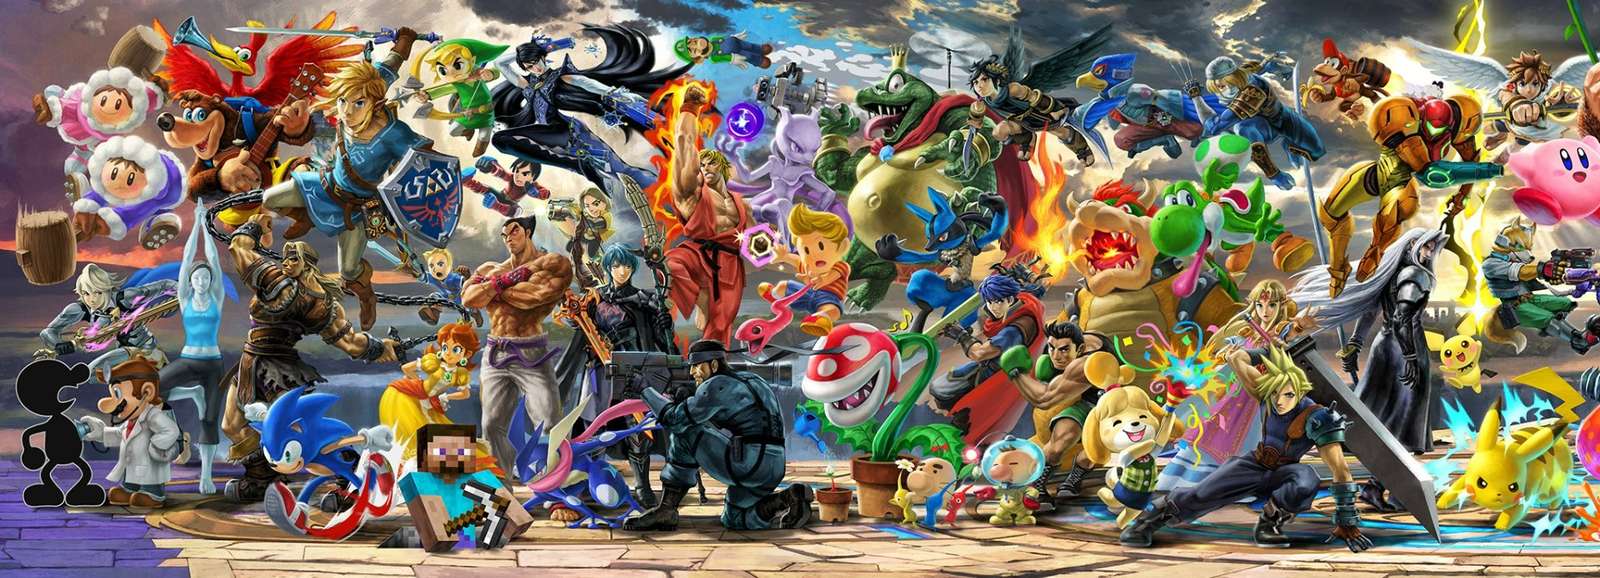 Фреска Super Smash Bros Ultimate, левая половина пазл онлайн